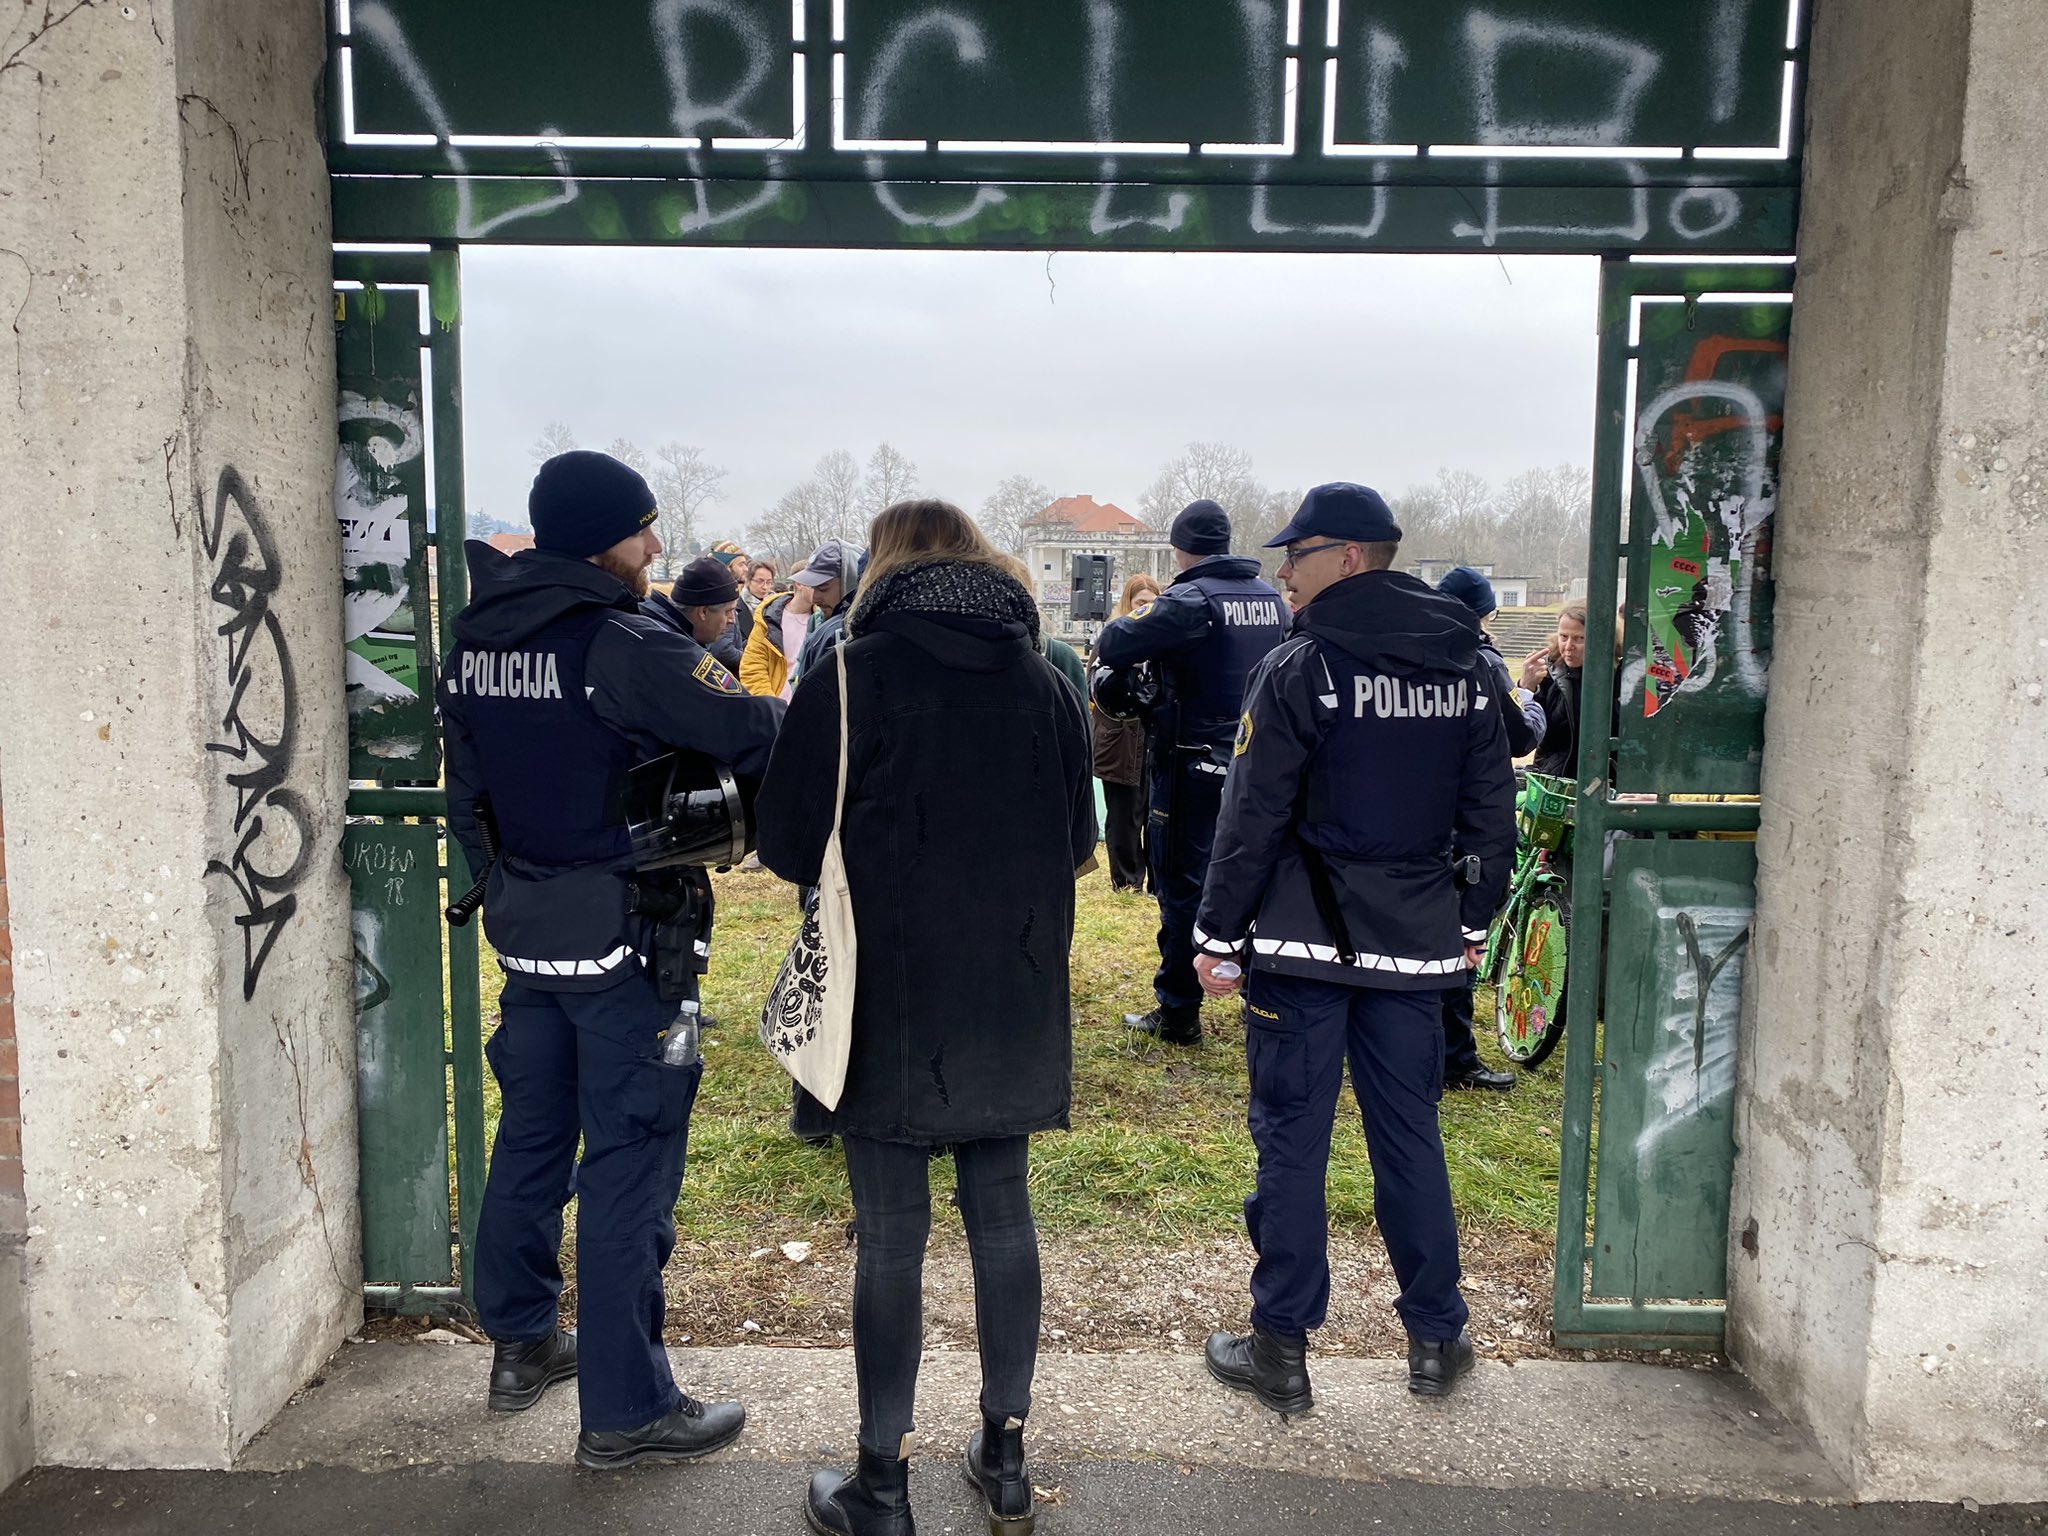 (VIDEO) Incident na Plečnikovem stadionu  – Mladi na podnebnem štrajku okupirali Pečečnikov stadion in na njem sadili drevesa – Policija jih je zaradi domnevnega  “nezakonitega vdora na privatno zemljišče” popisala